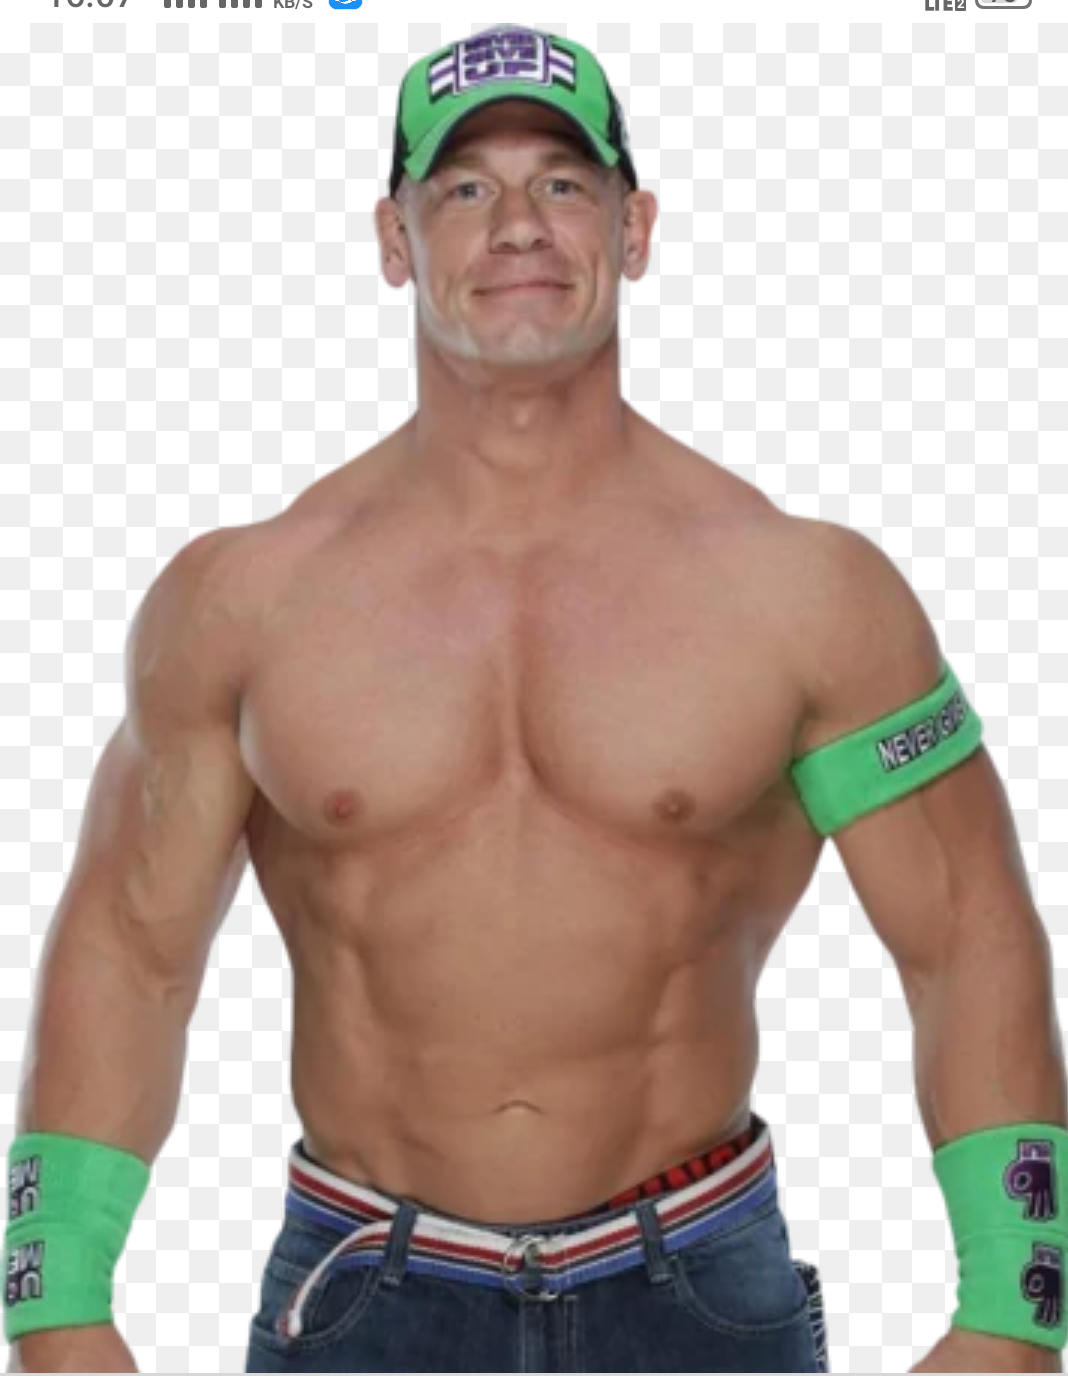 All about WWE superstar John cena